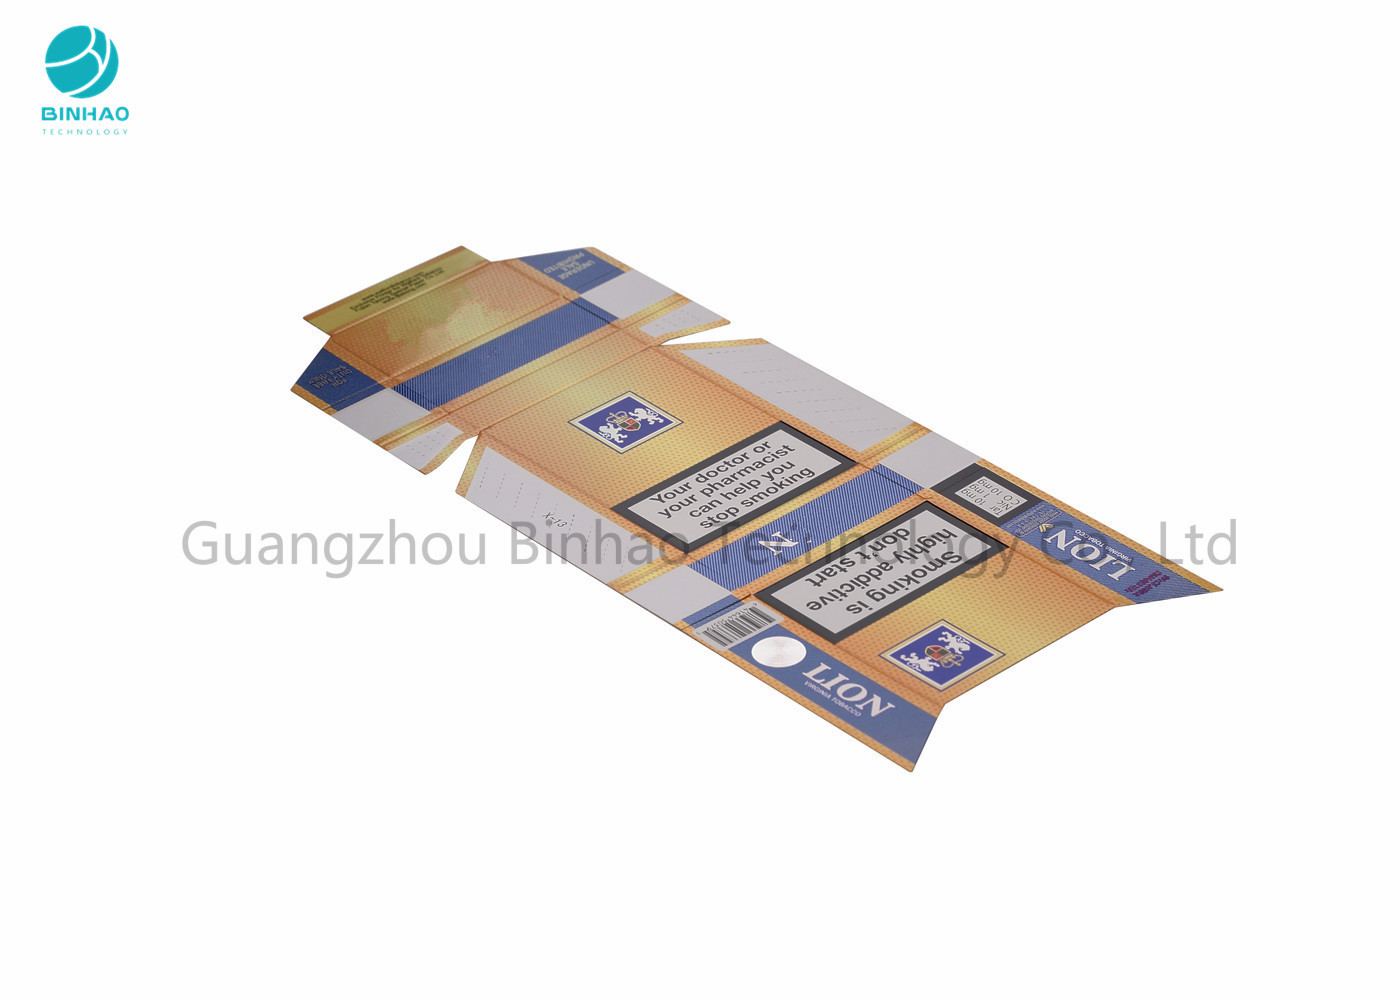 موارد جعبه های کاغذی جعبه ای / بسته کامل رنگی چاپ با مهر و موم داغ